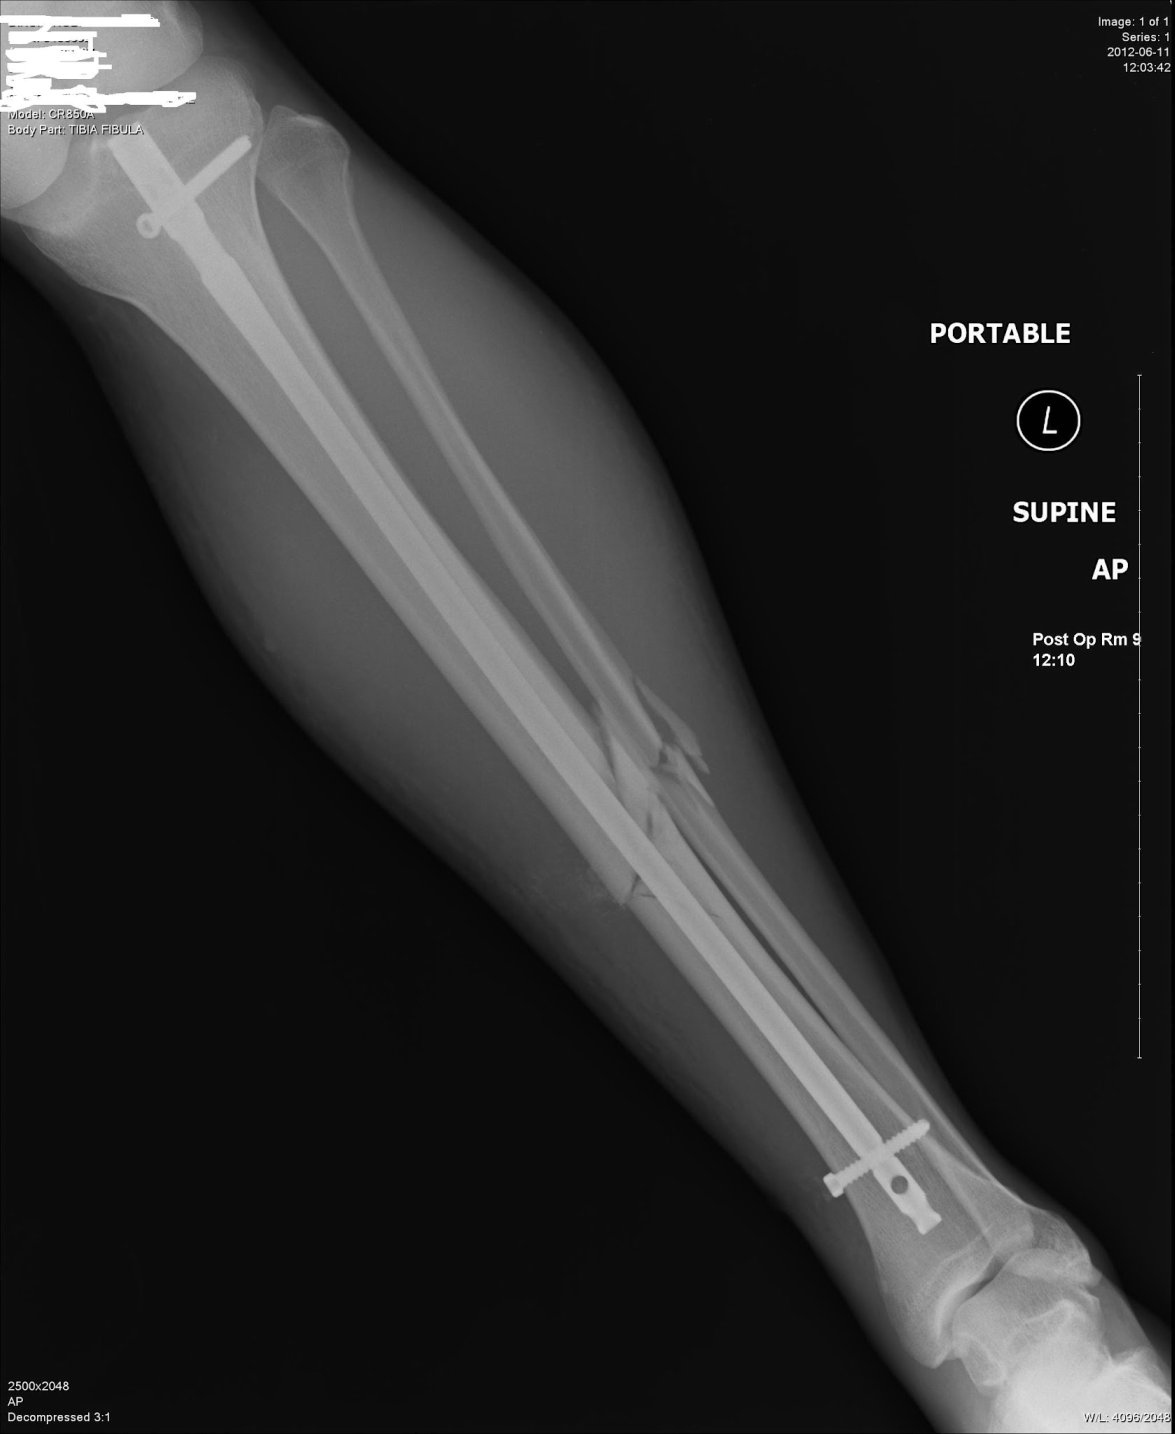 fibula bone fracture